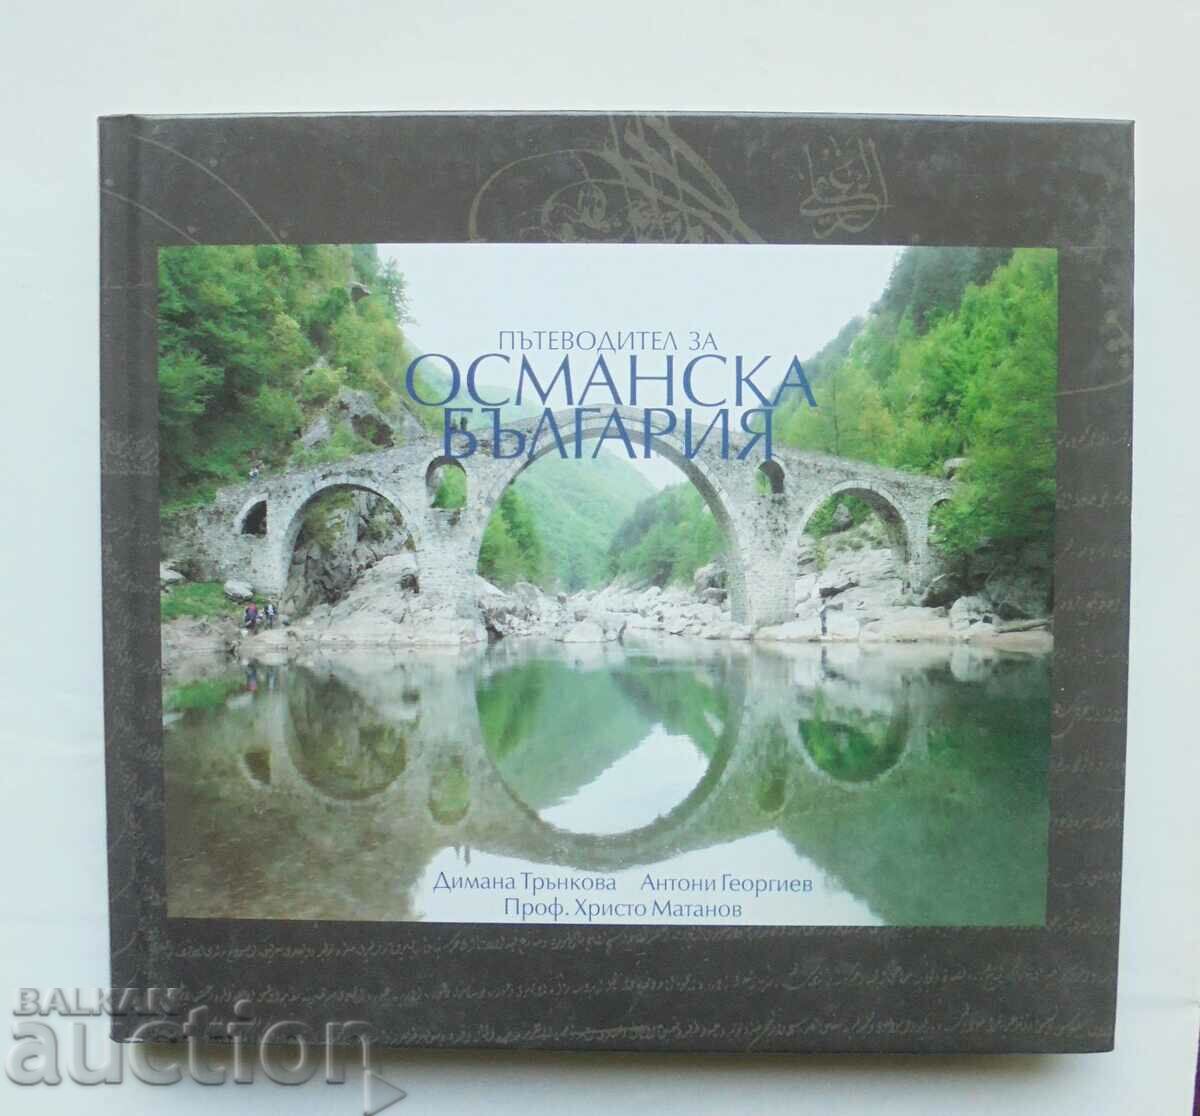 Guide to Ottoman Bulgaria - Dimana Trunkova 2011